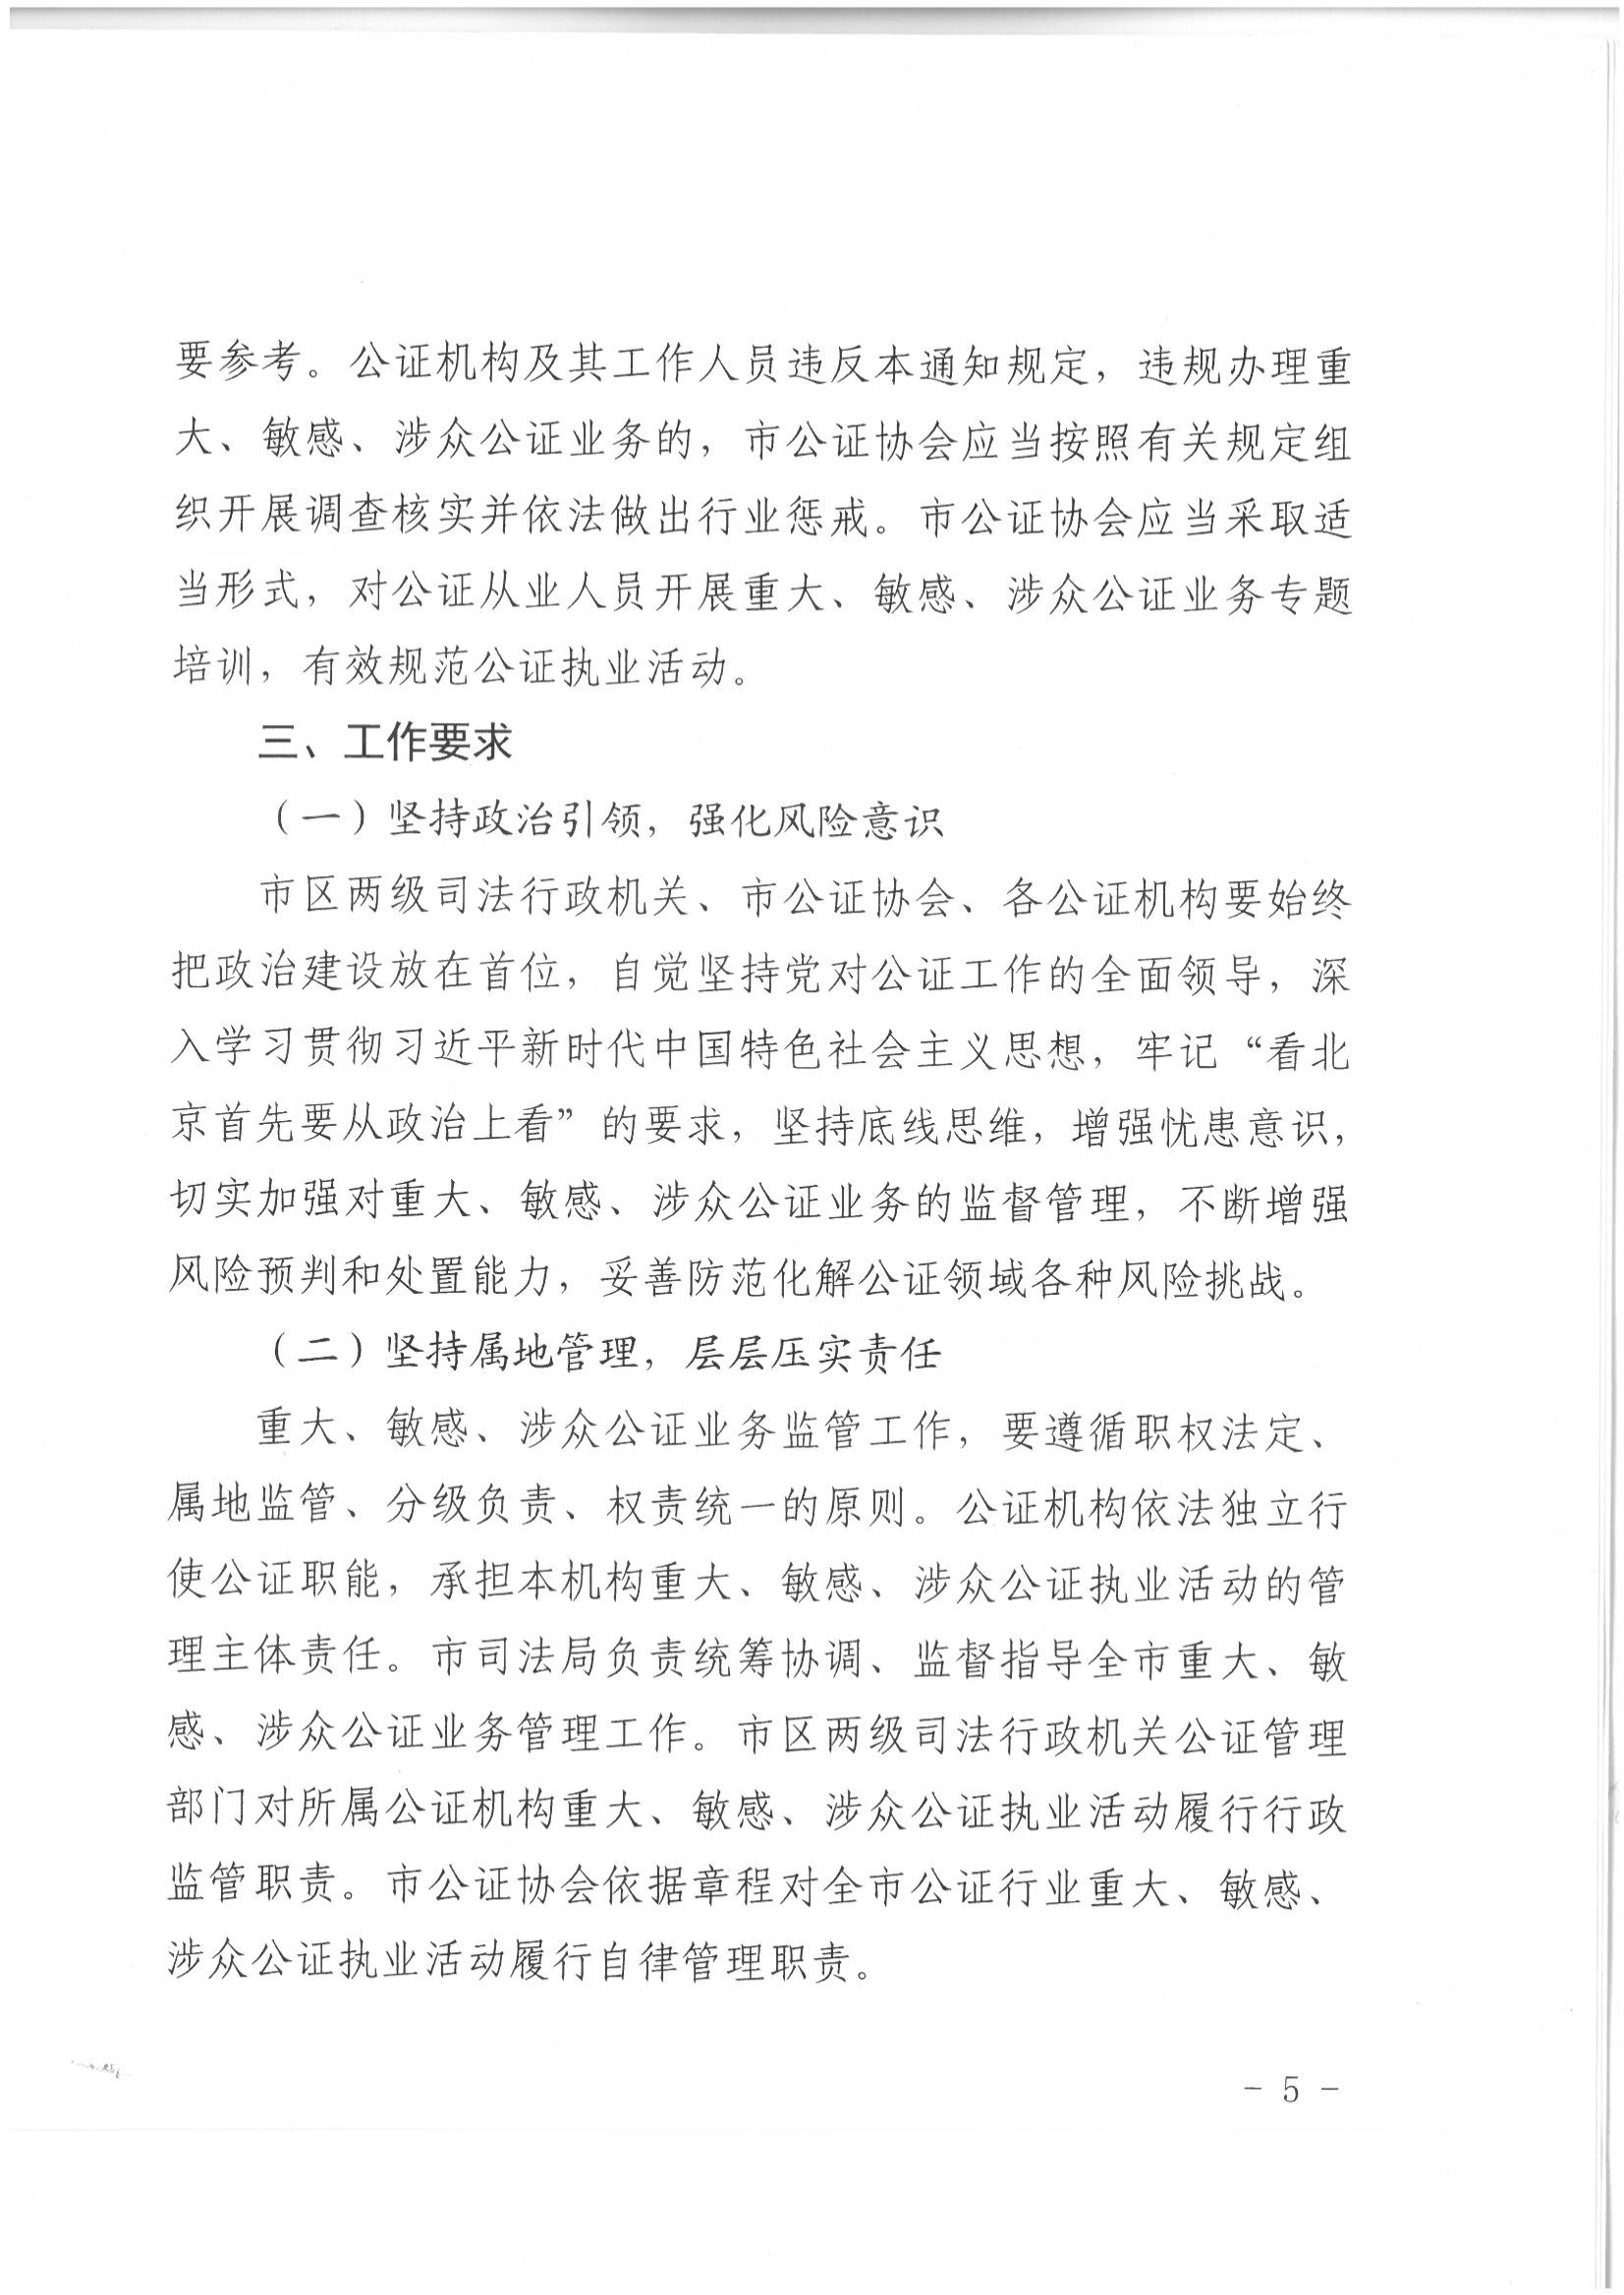 1北京市司法局办公室关于加强重大、敏感、涉众公证业务管理工作的通知_04